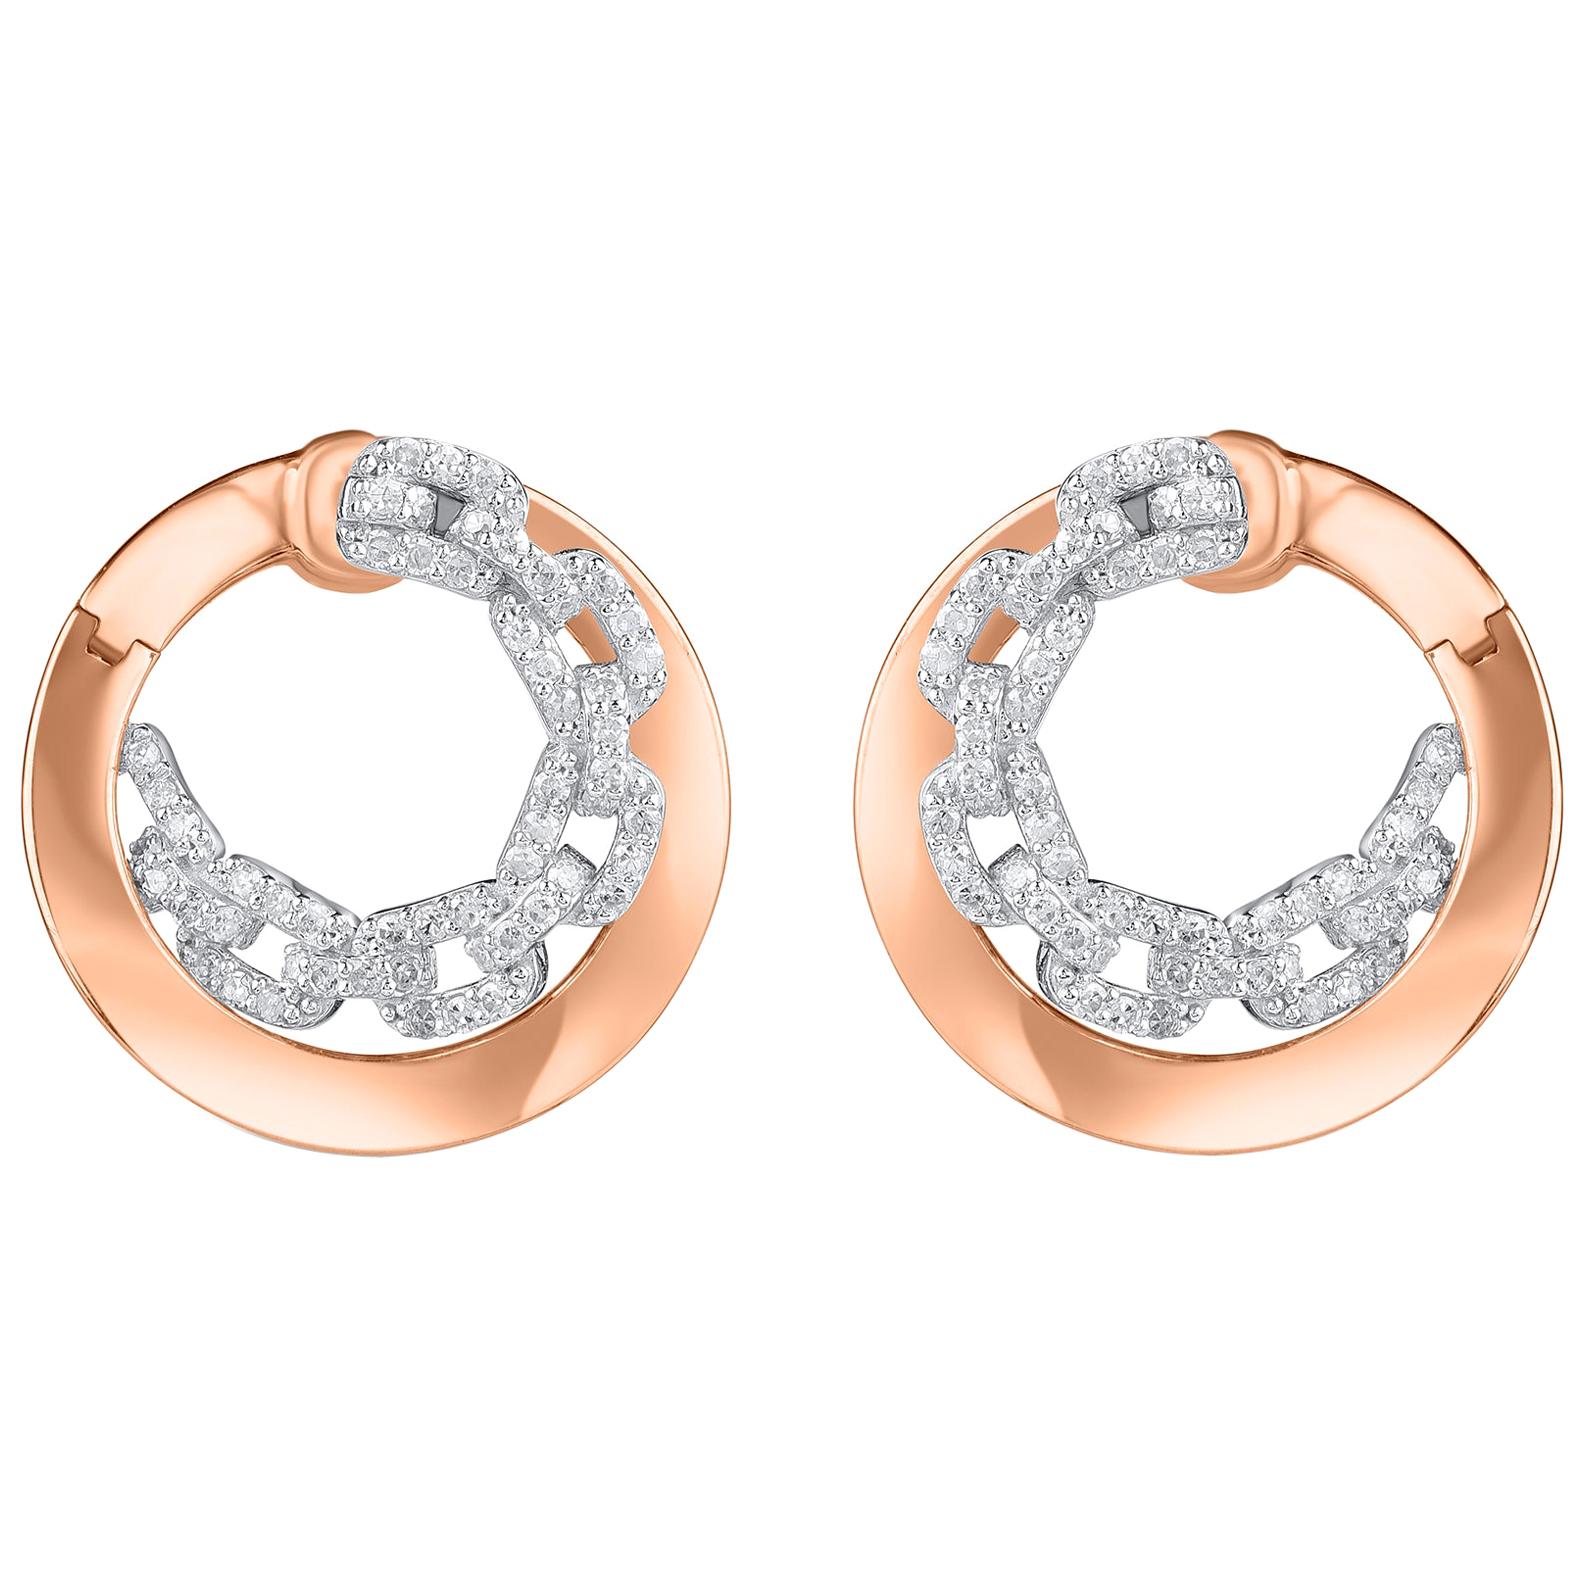 TJD 0.55 Carat Diamond 18 Karat Two Tone Gold Chain Link Twist Earrings For Sale